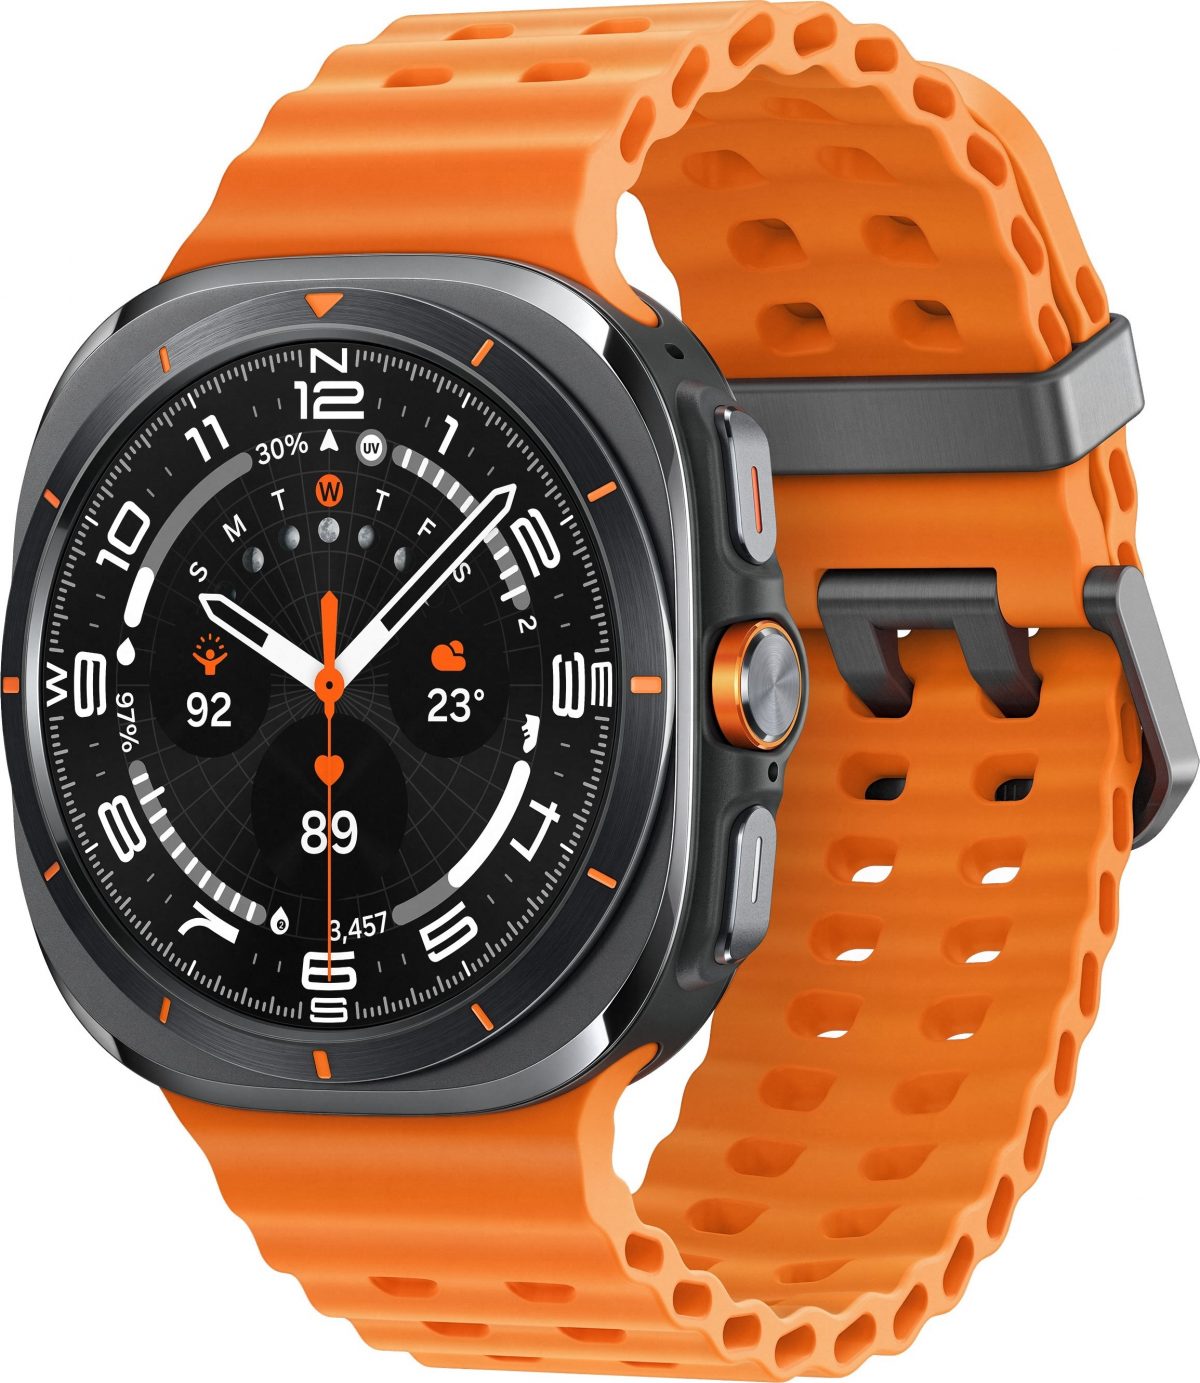 smartwatch Samsung Galaxy Watch Ultra cena specyfikacja rendery